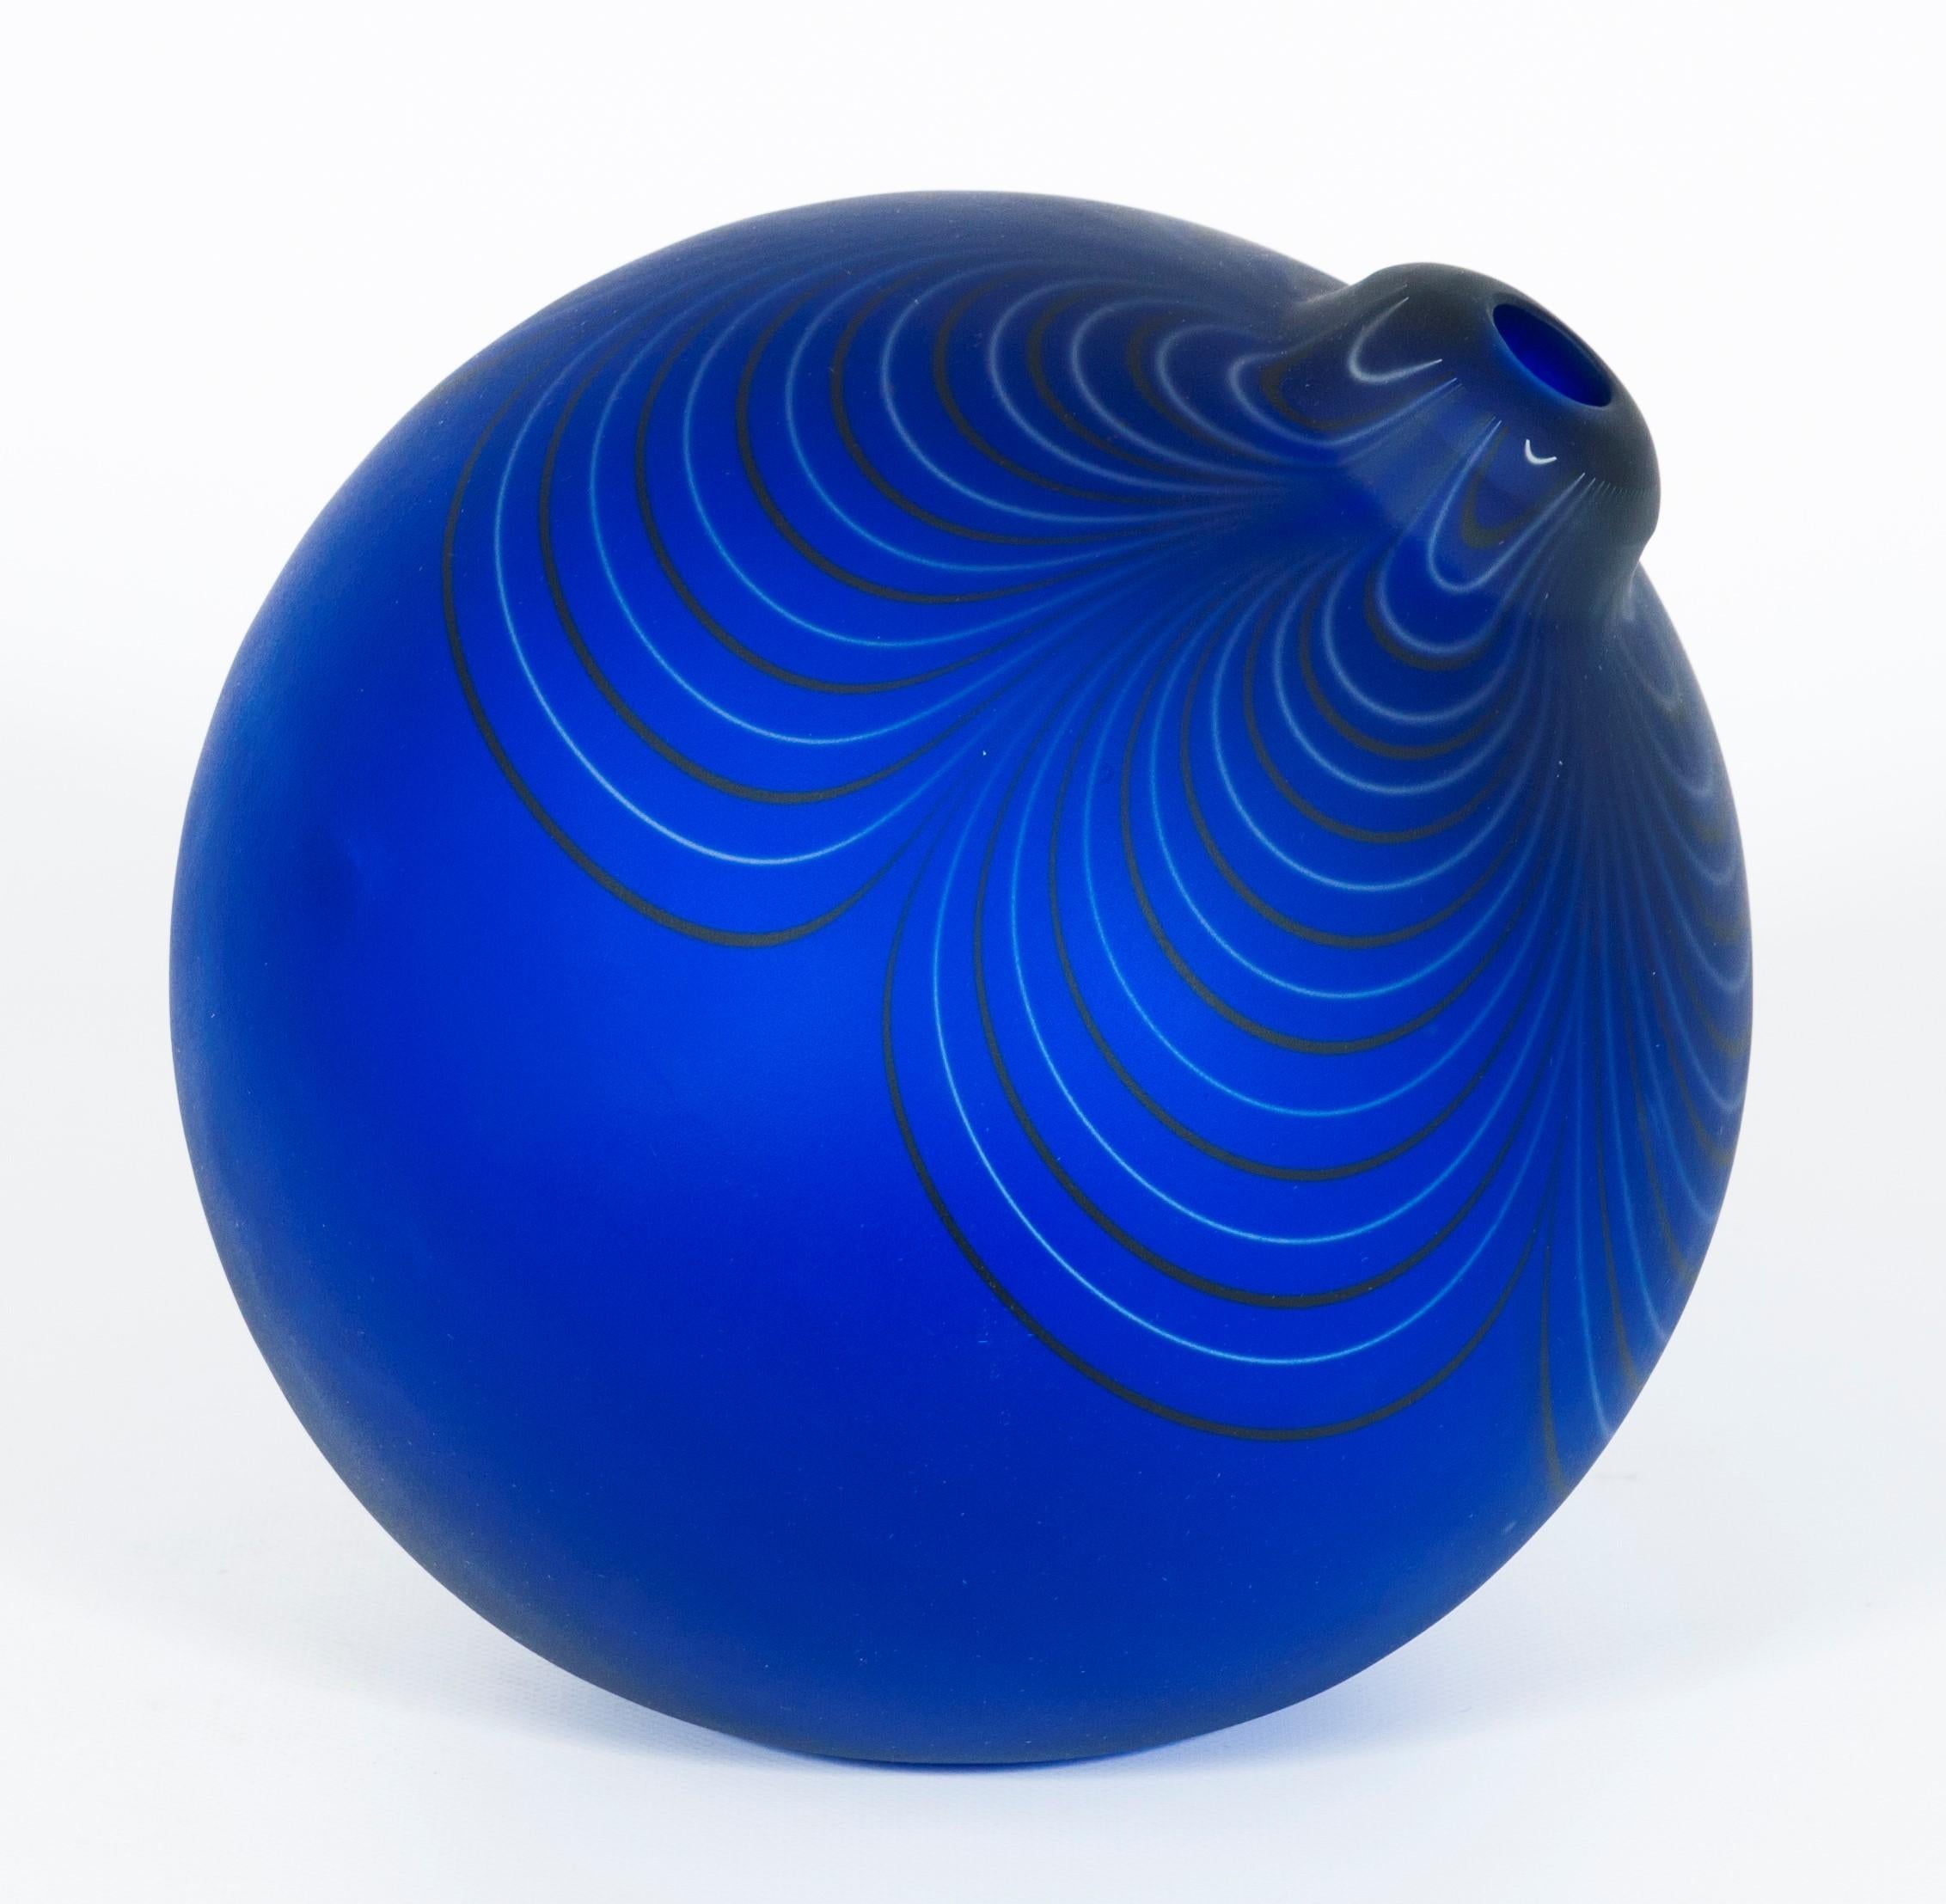 Design Sphère bleue en verre de Murano par Alberto Donà, Italie, années 1980.
Cette œuvre d'art unique est tout simplement exceptionnelle. Un chef-d'œuvre vintage du célèbre artiste italien Alberto Donà, entièrement réalisé à la main sur l'île de